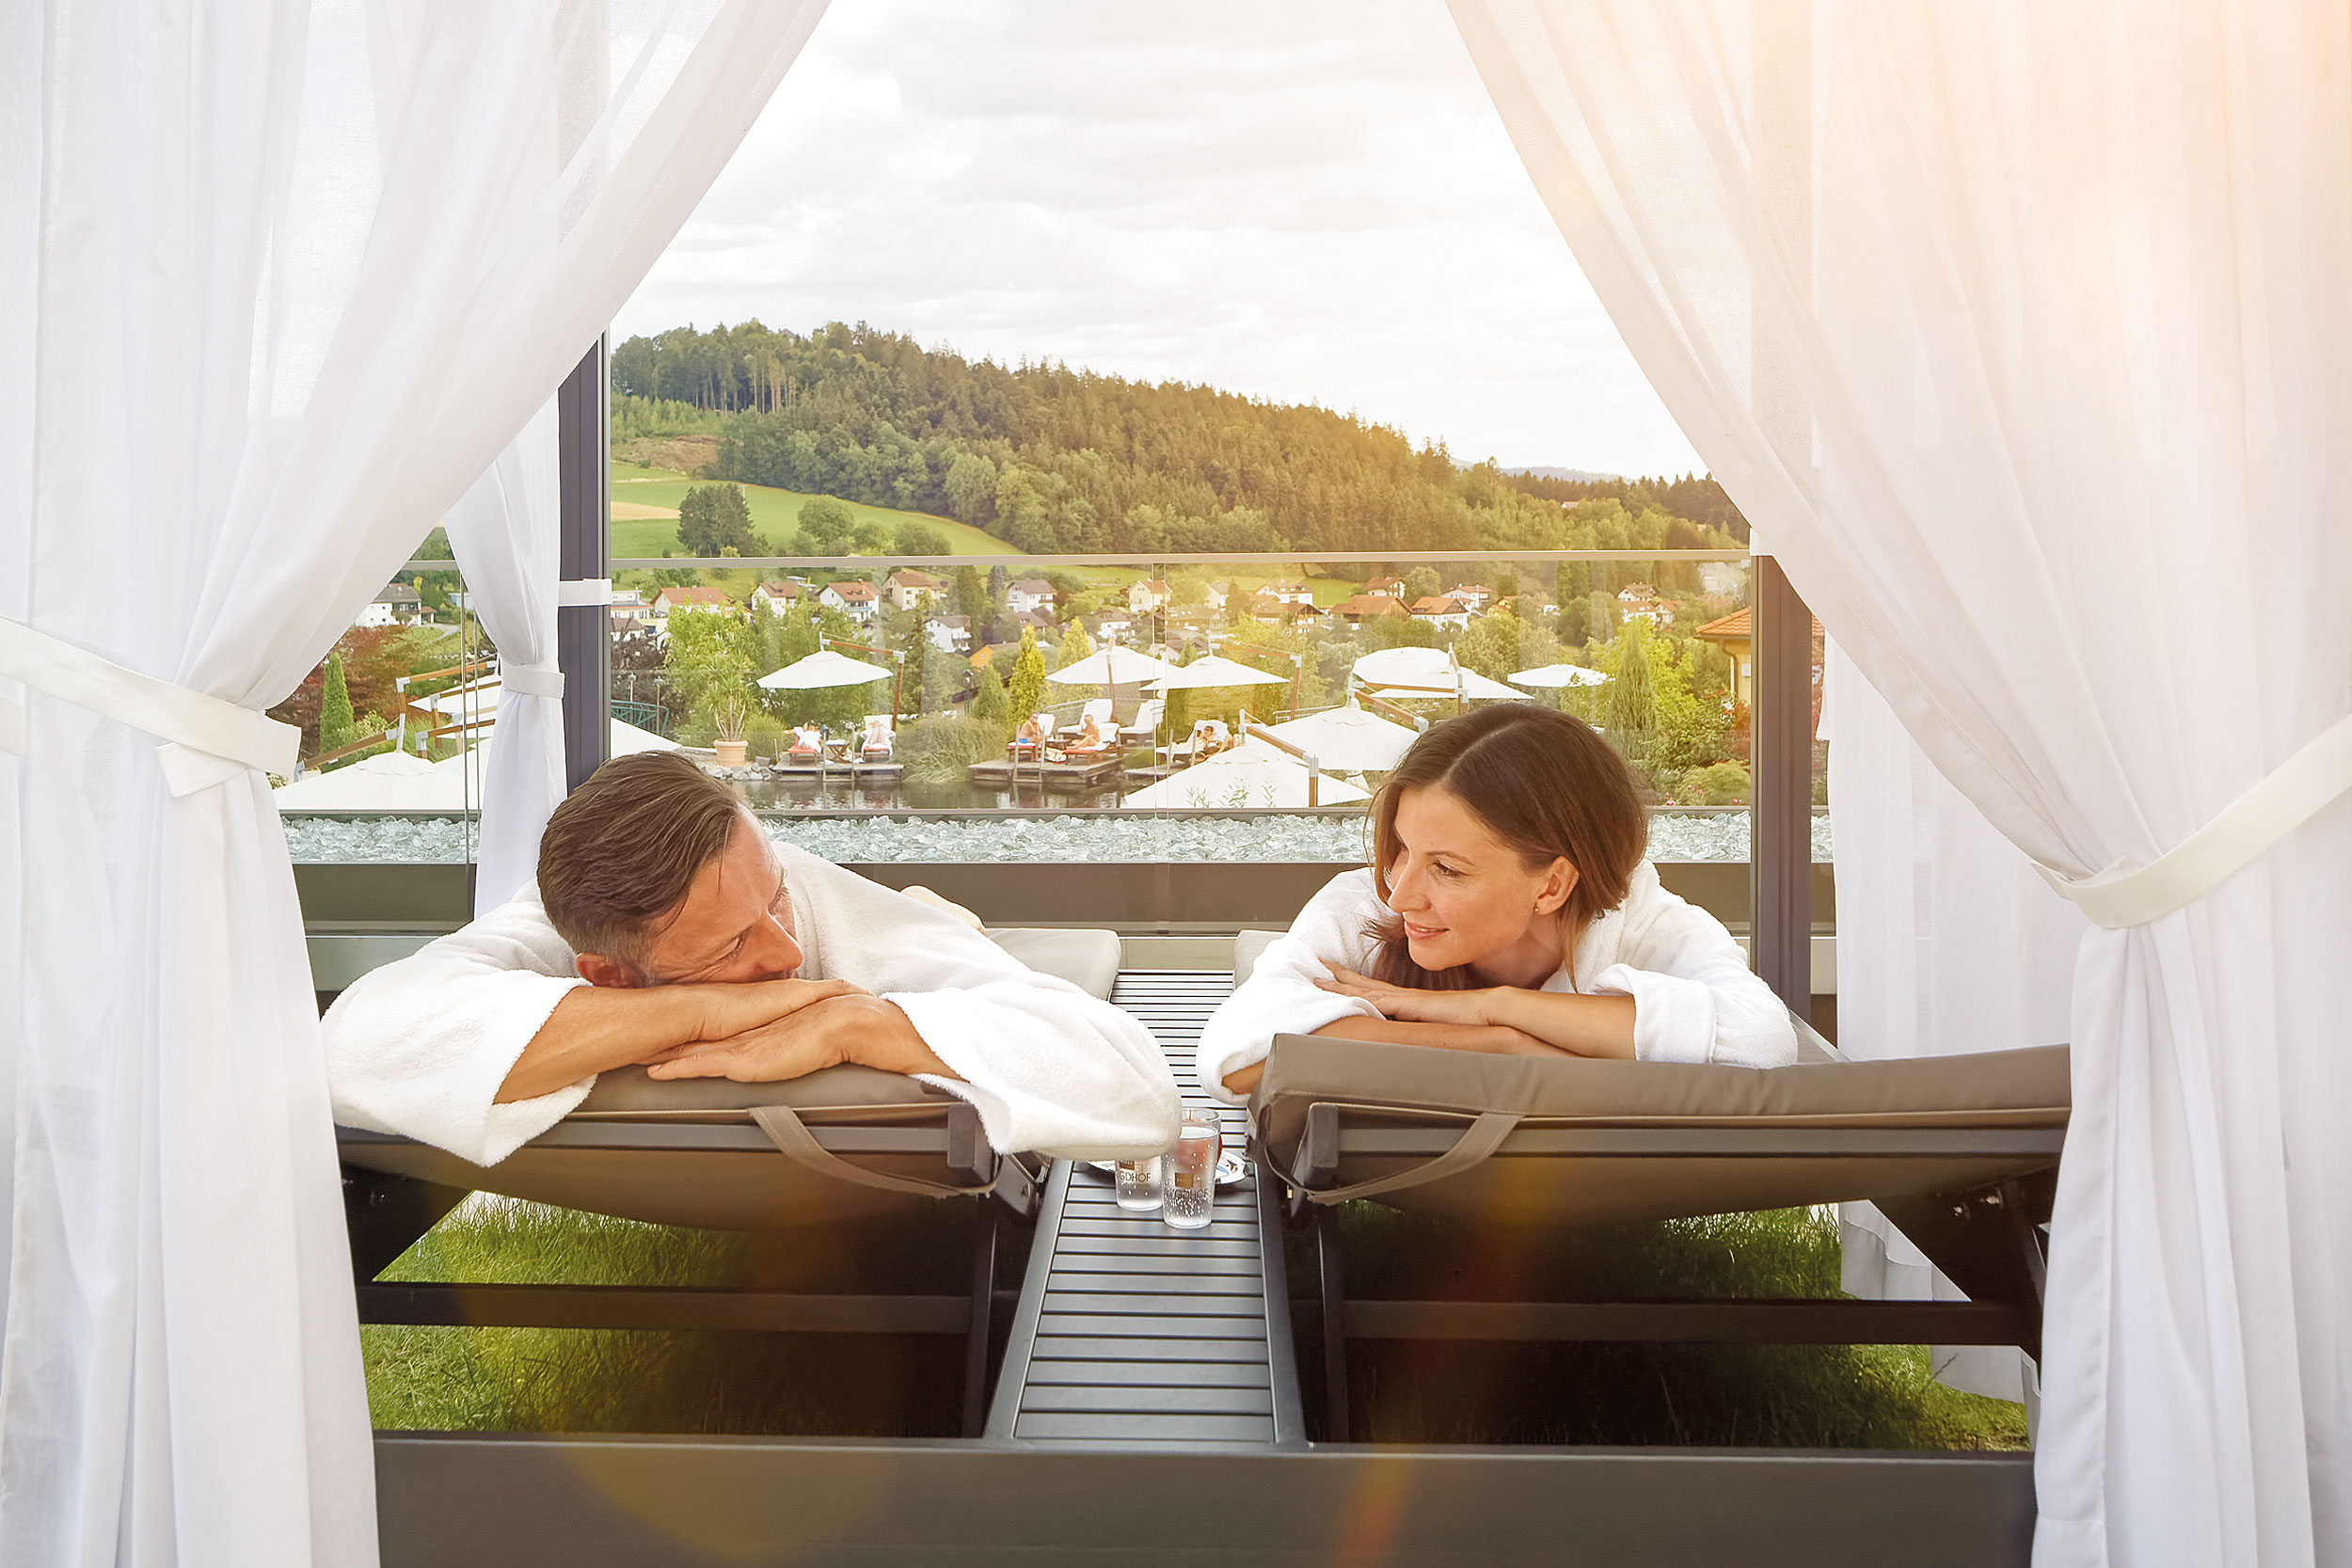 Tageswellness - Day Spa de luxe im Bayerischen Wald